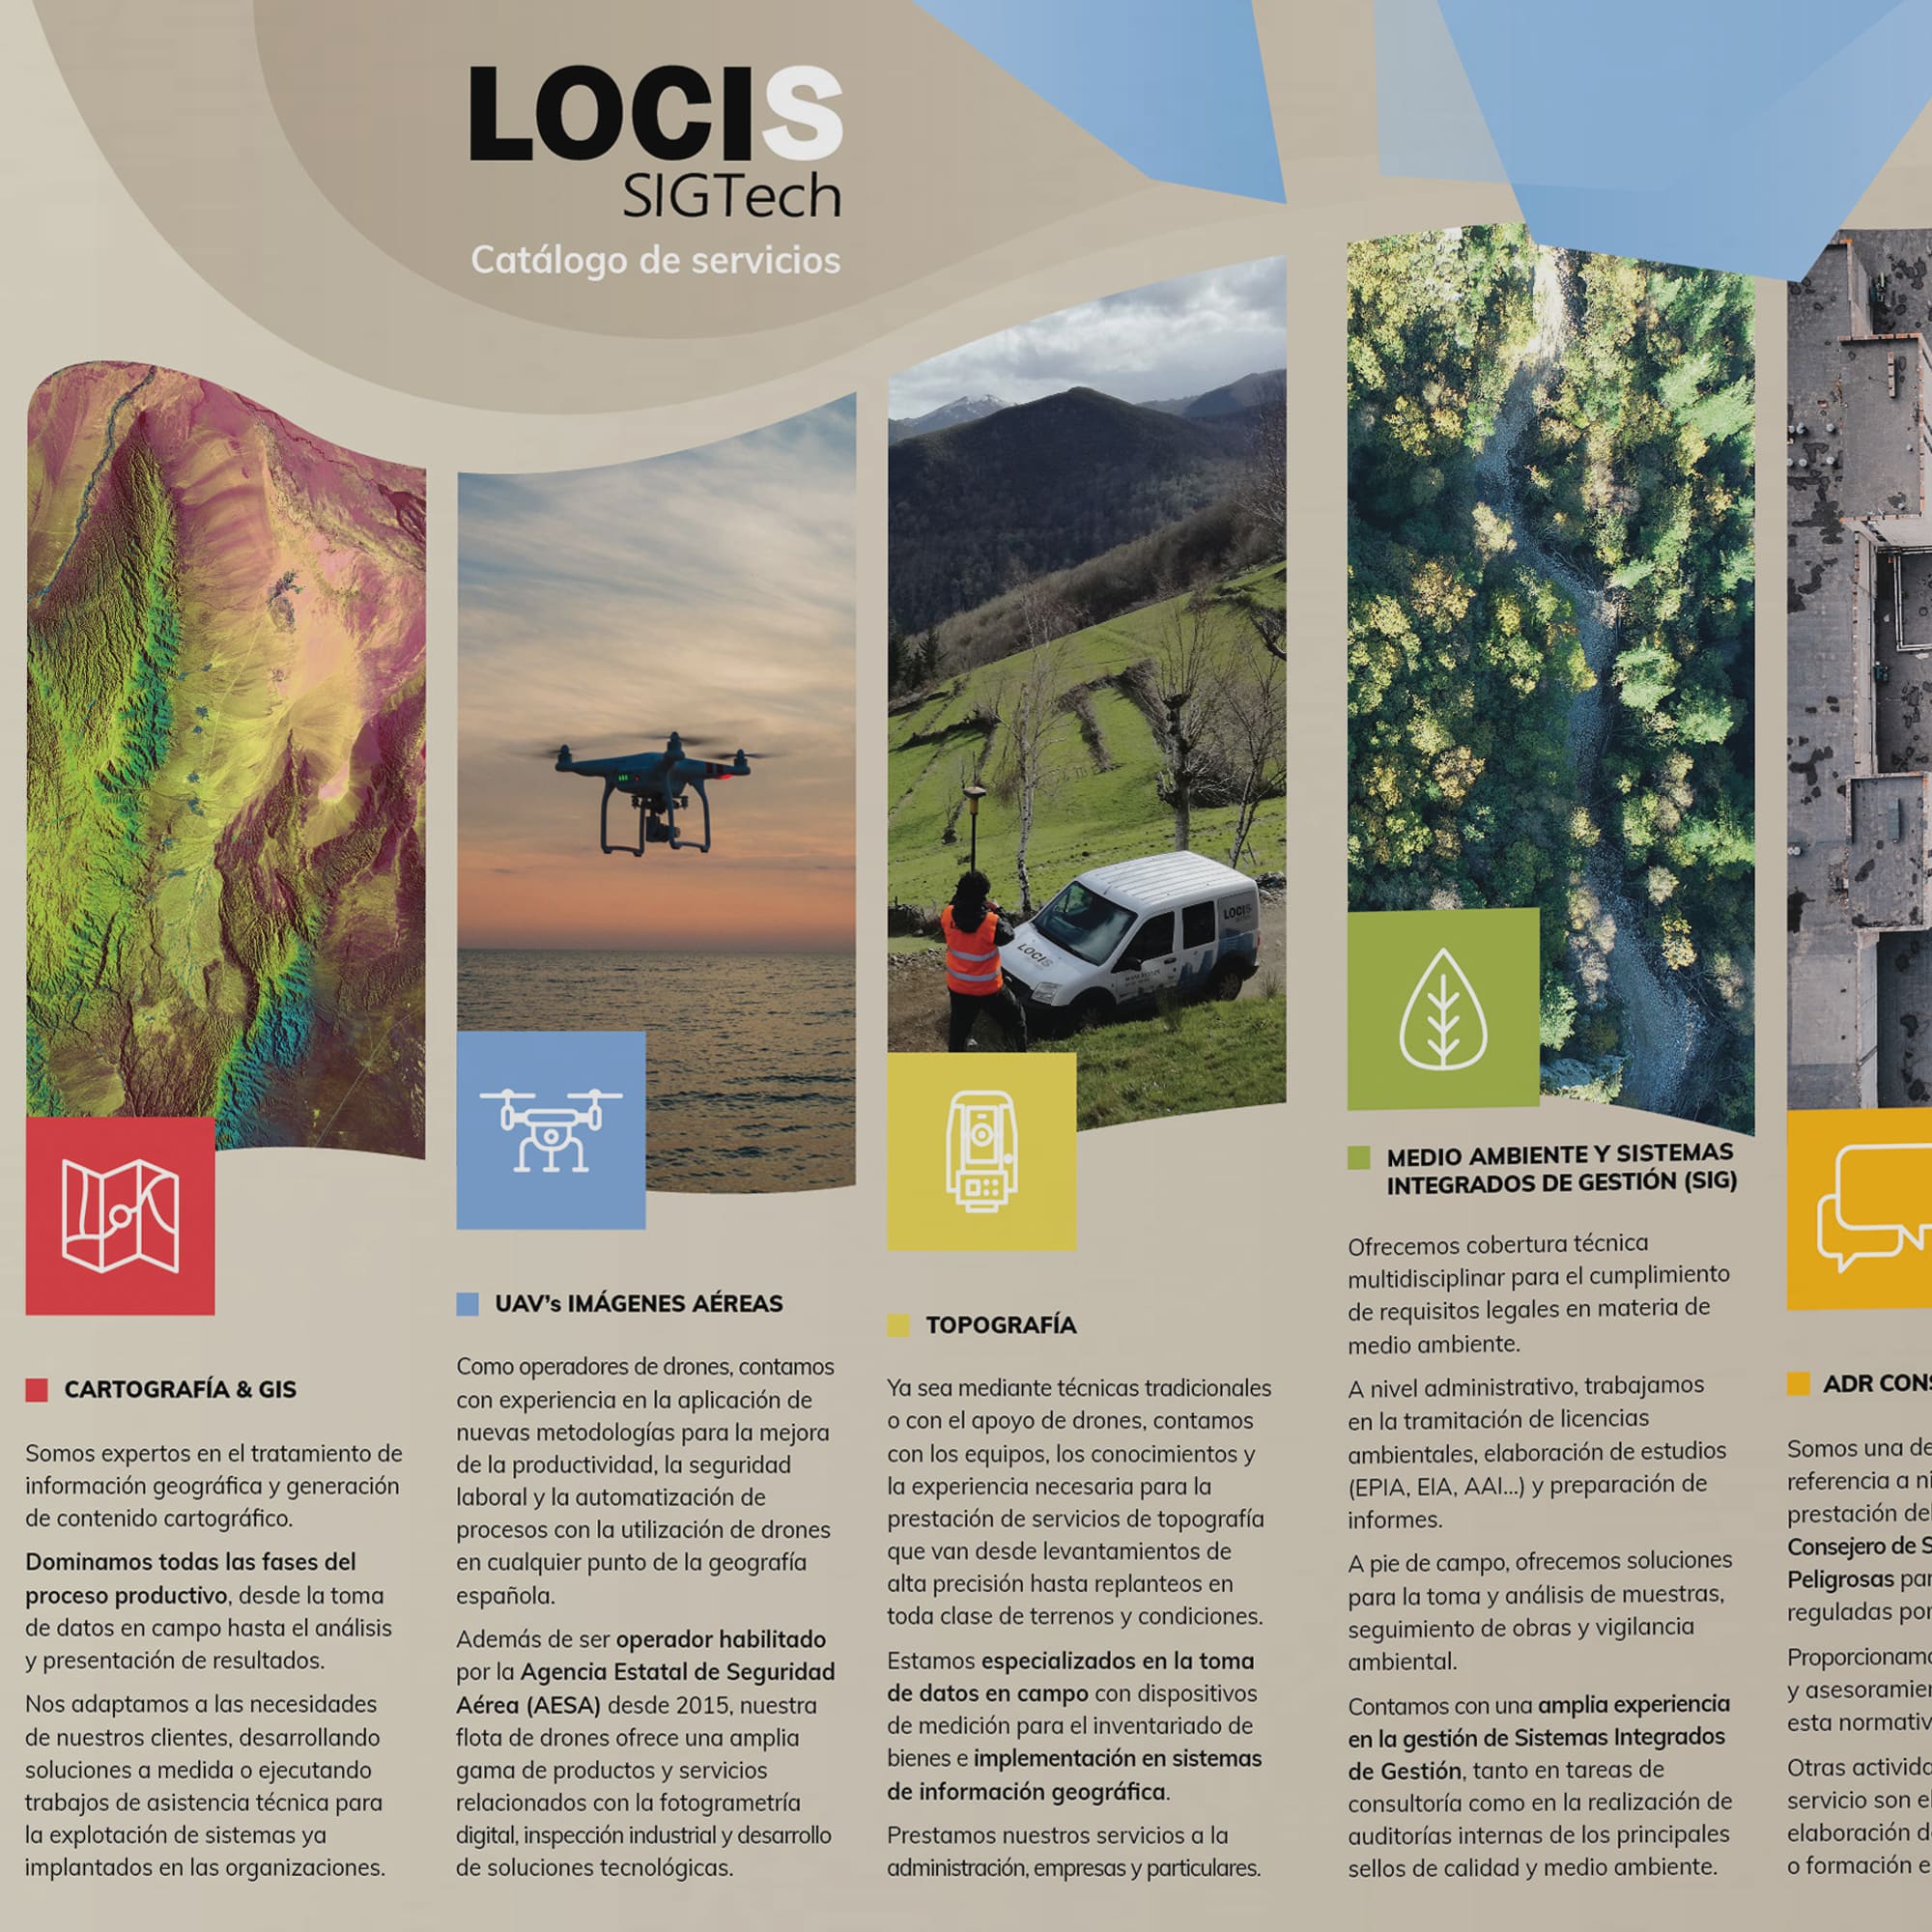 Diseño de folleto para Locis. Interior del catálogo de servicios de la empresa Locis